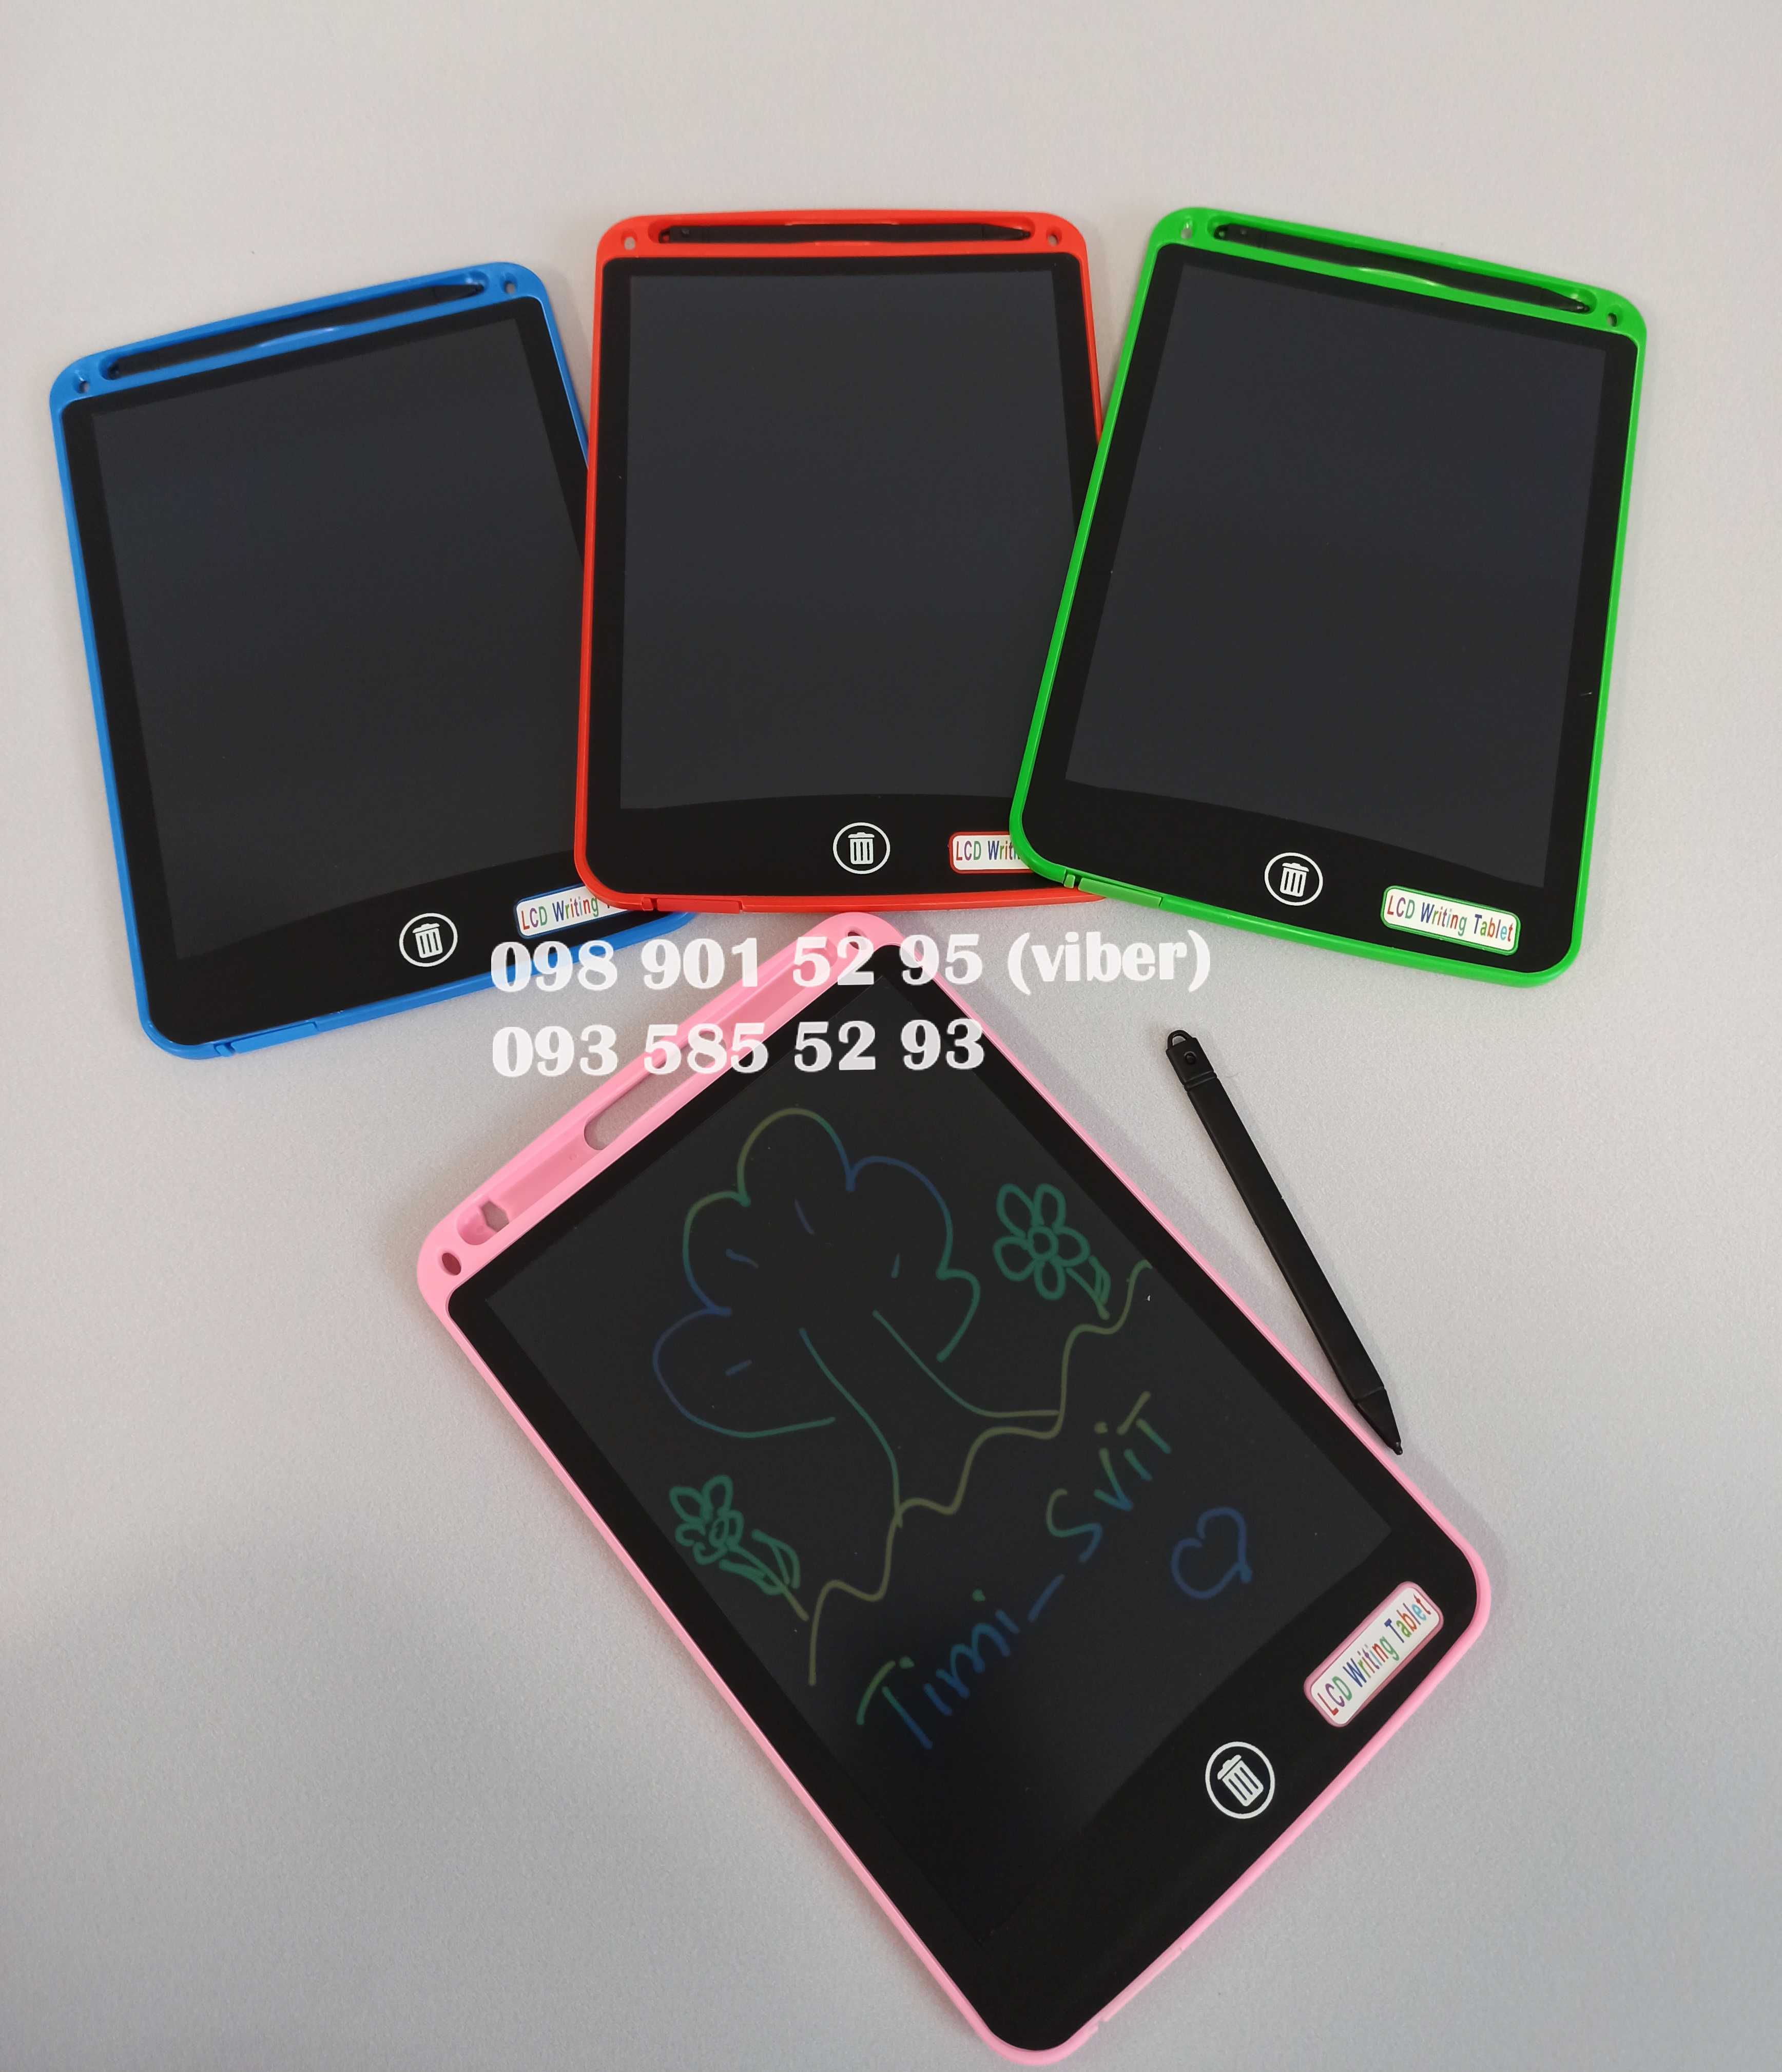 Графический планшет LCD для рисования детский 8.5" доска мольберт